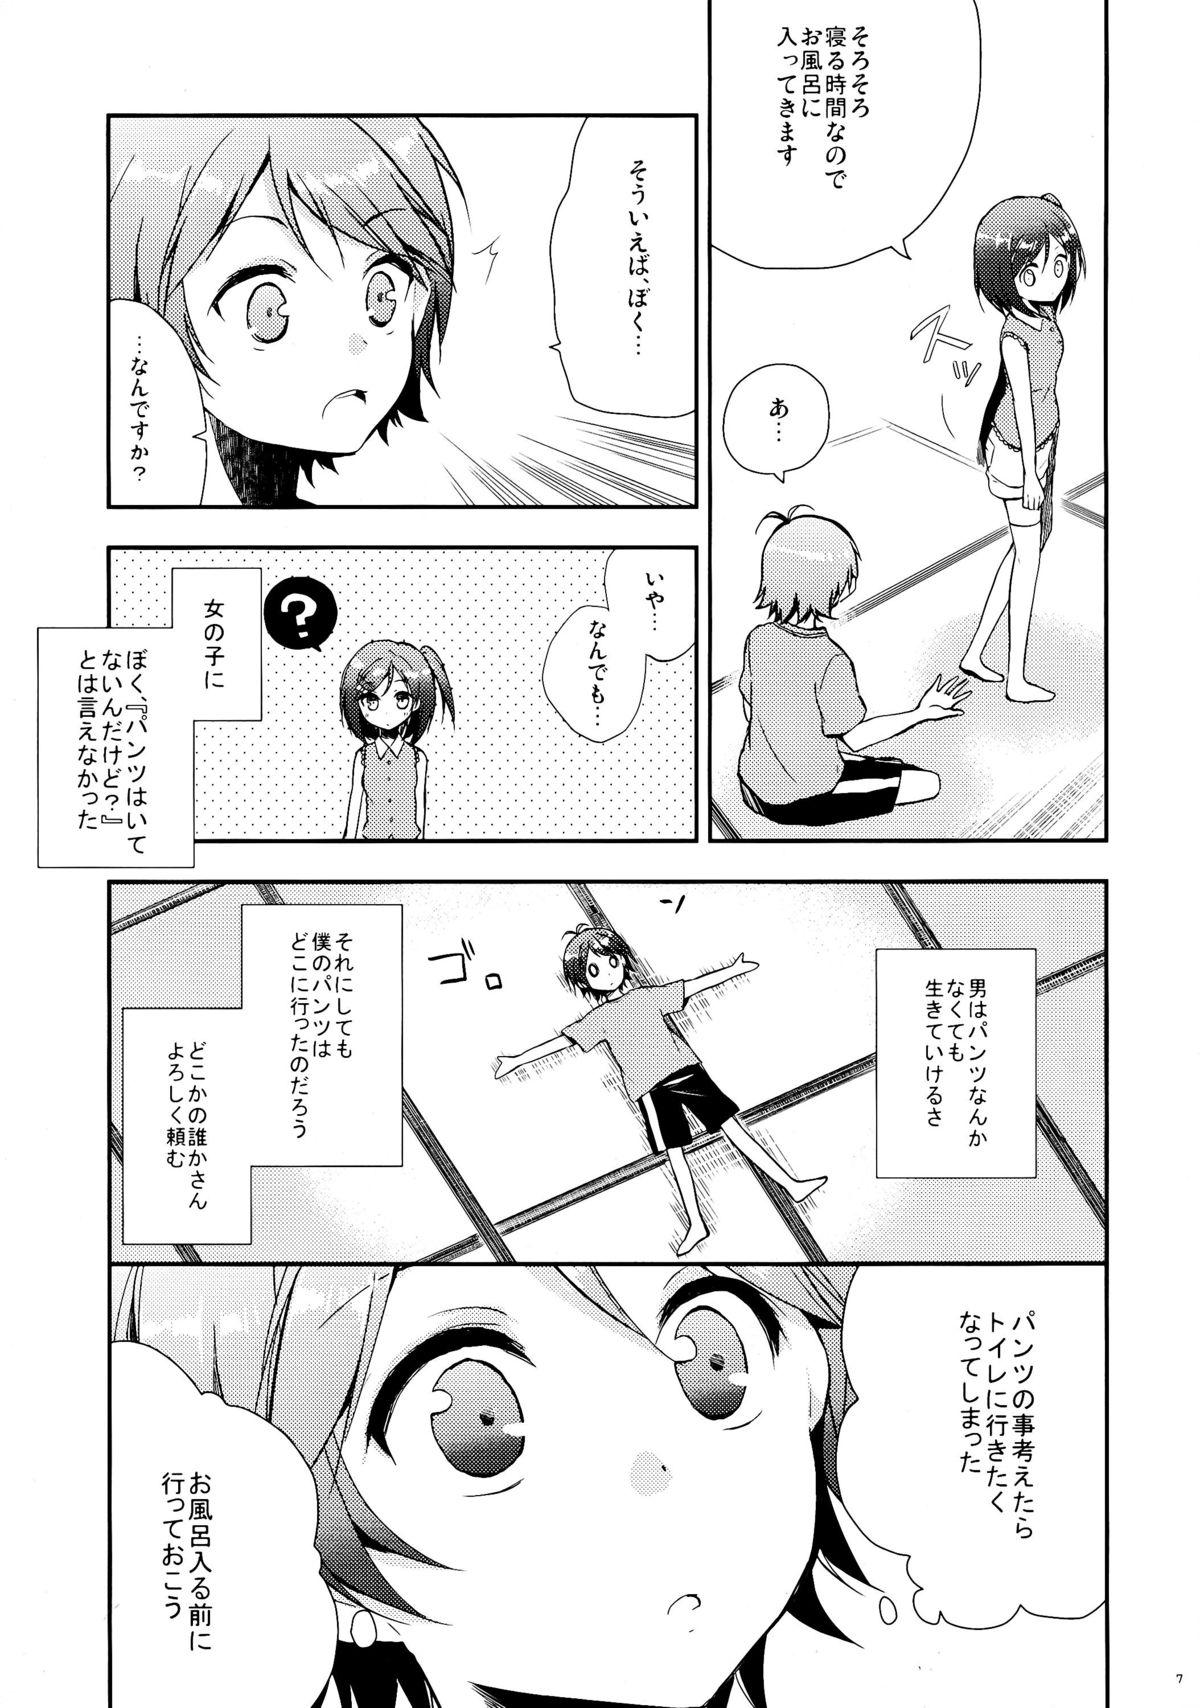 Tiny Tits Hentai Ouji to Hazukashii Neko. - Hentai ouji to warawanai neko Cuzinho - Page 7